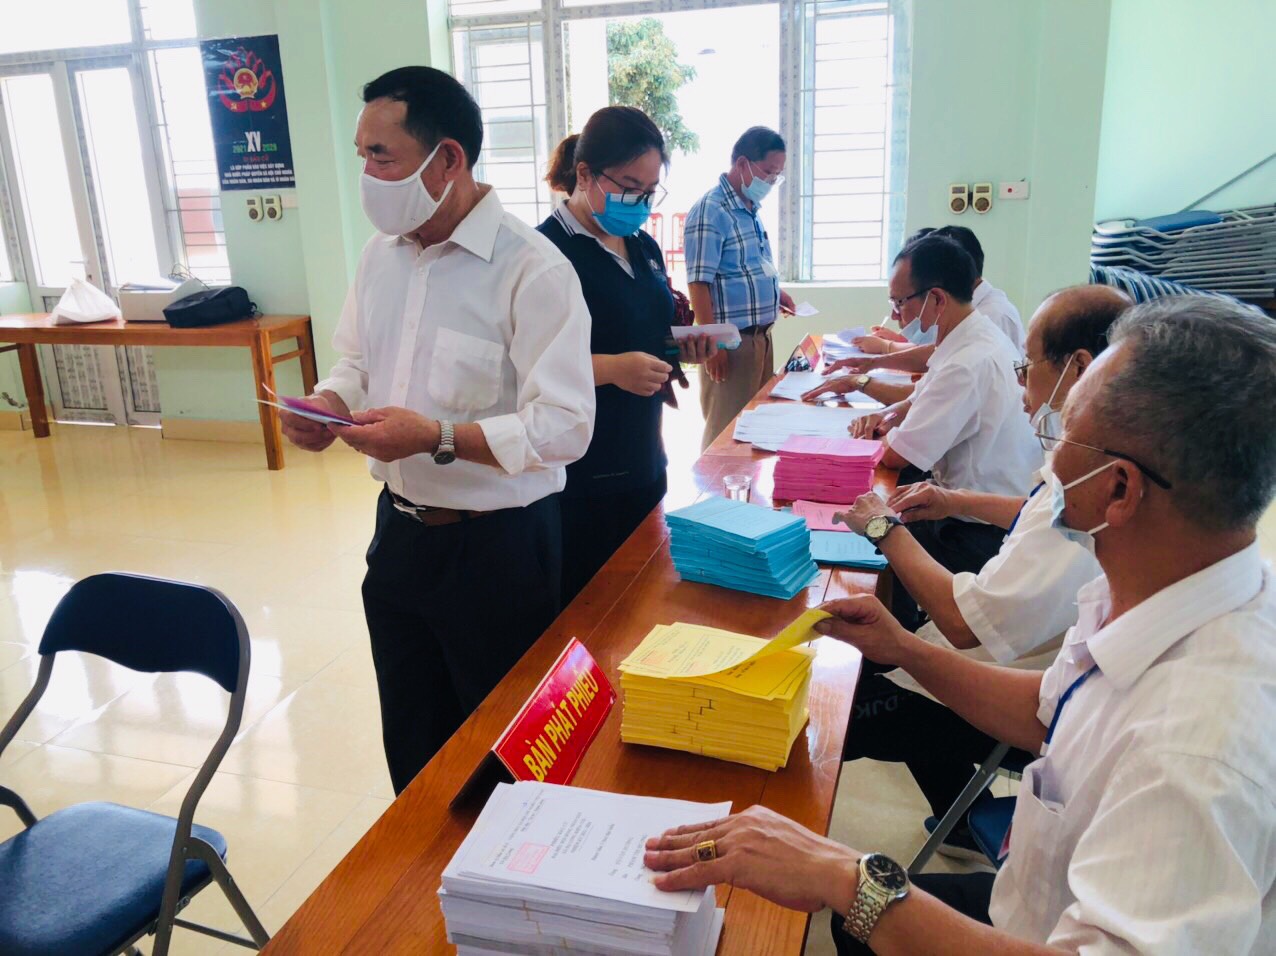 Quảng Ninh chuyển cả hòm phiếu lưu động tới giường bệnh cho bệnh nhân bỏ phiếu - Ảnh 9.